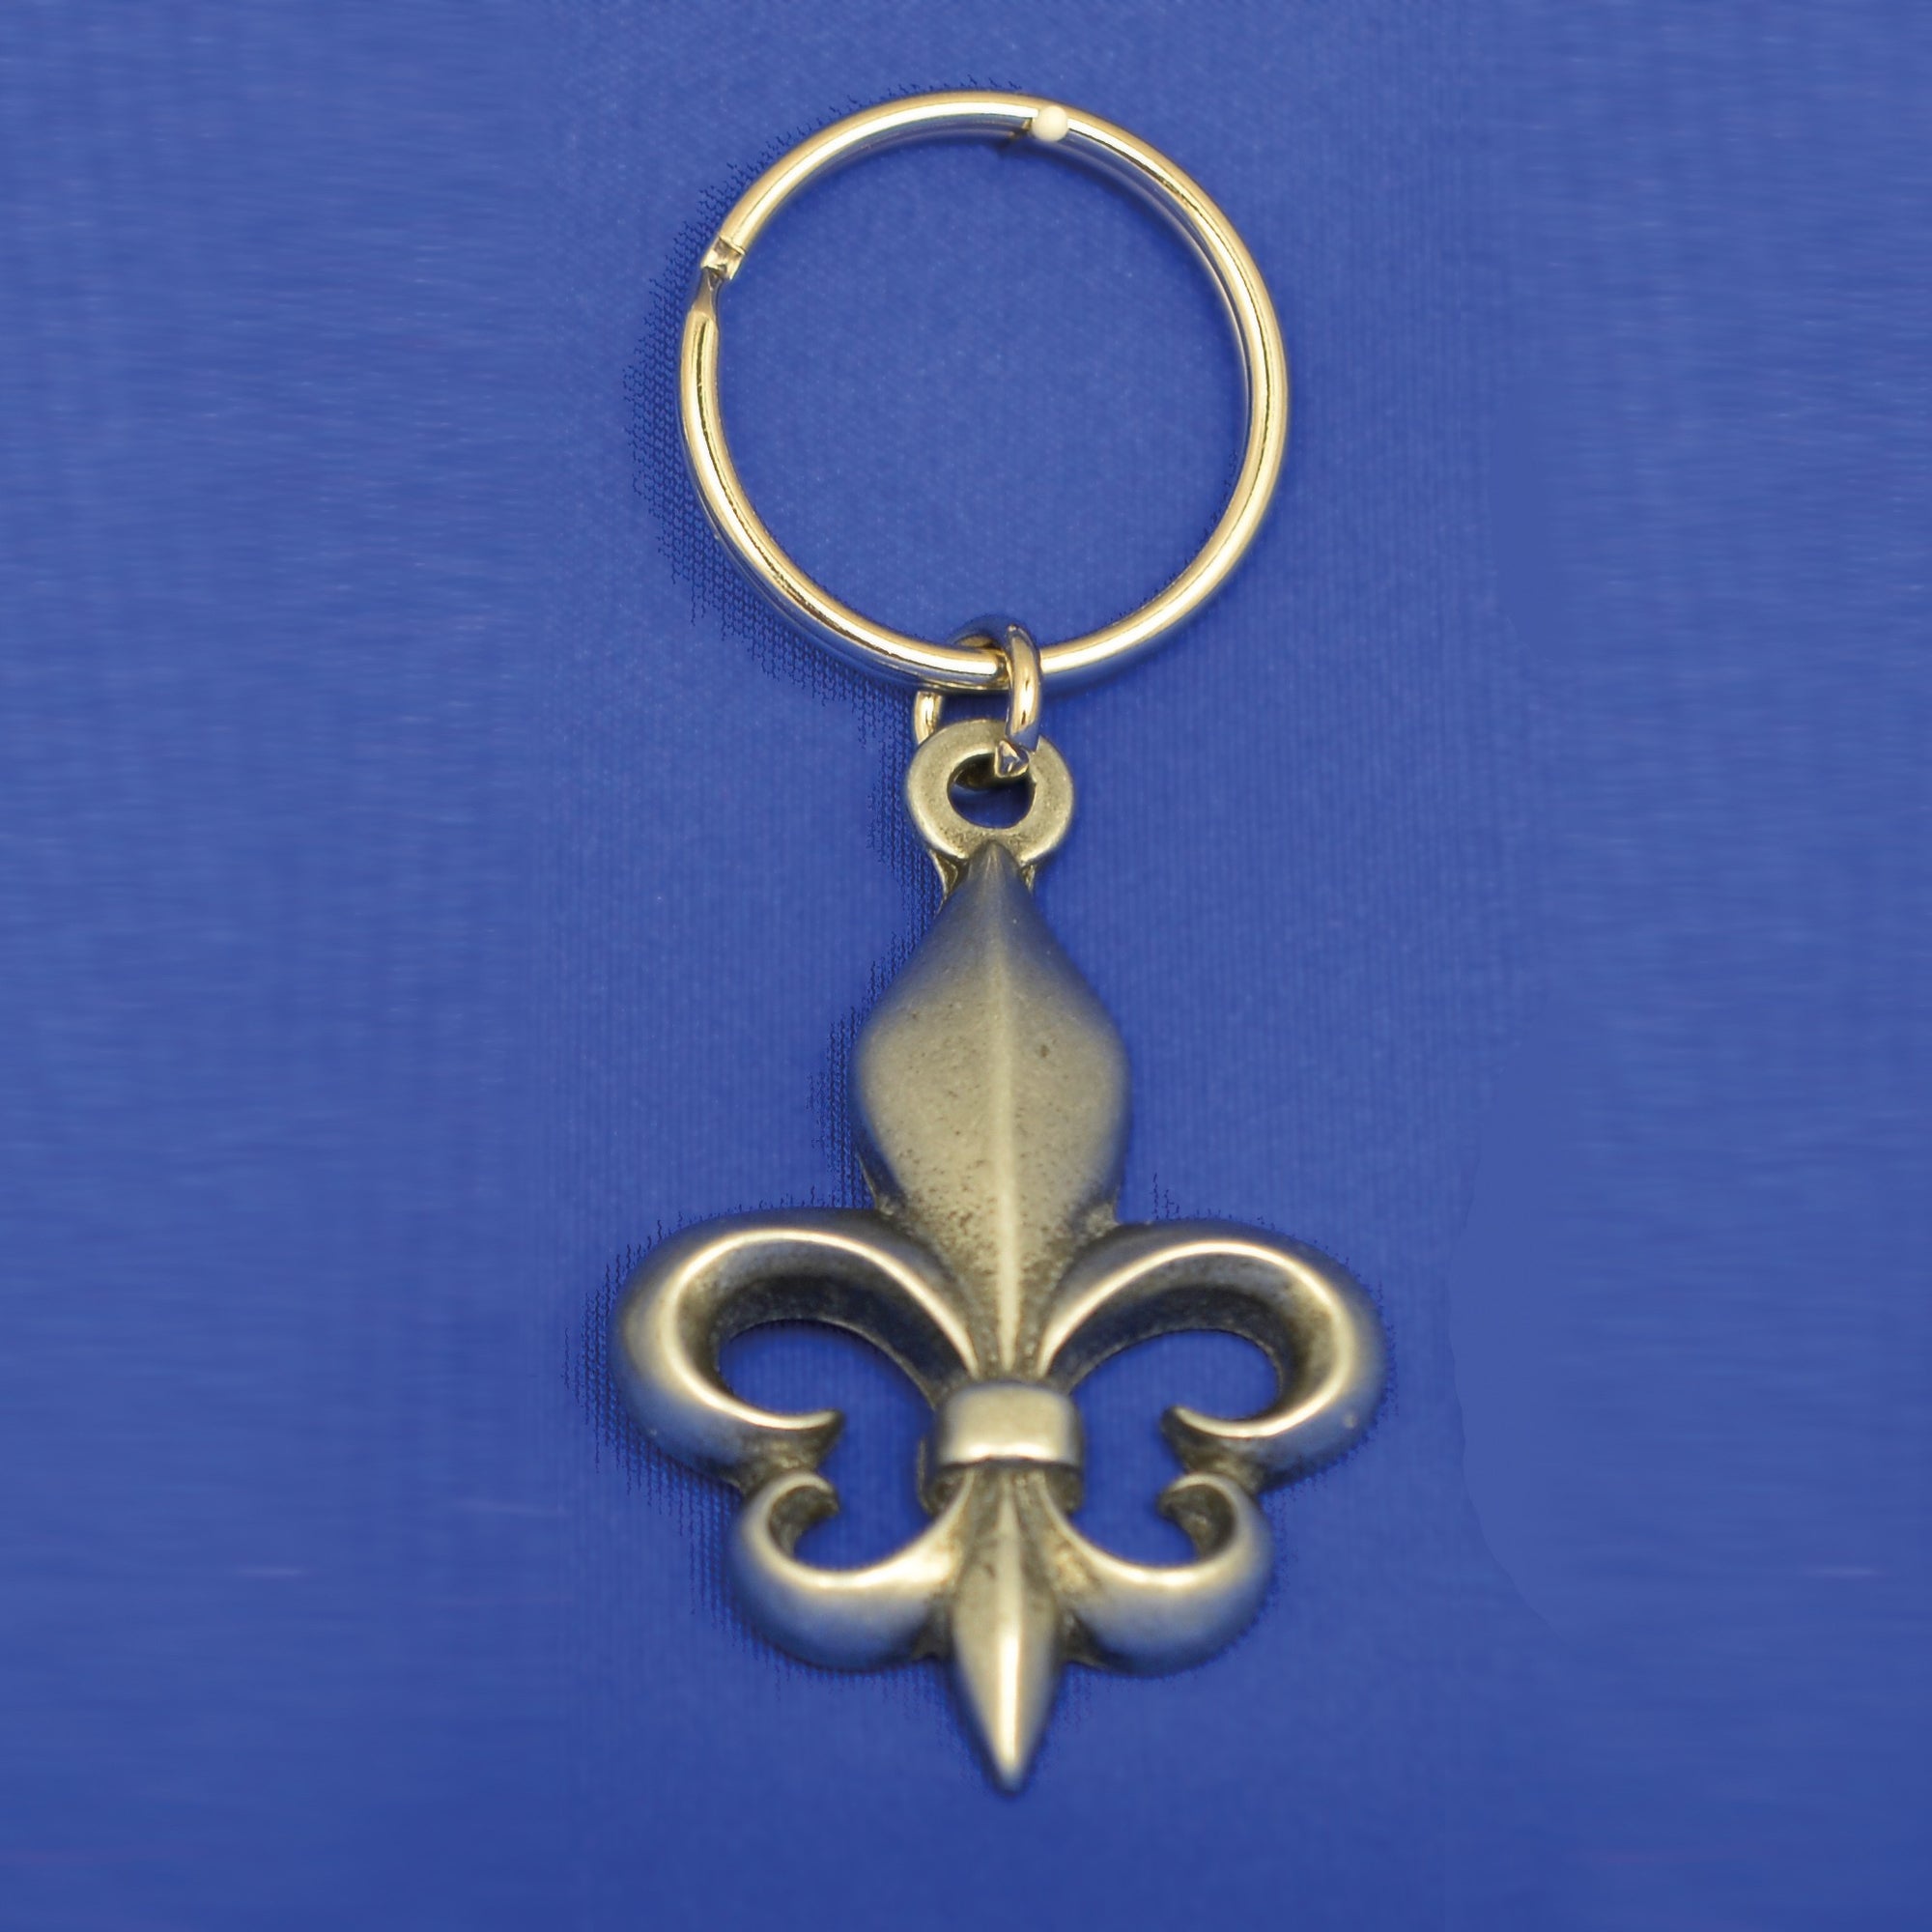 Porte-clés Fleur de lys - 82061